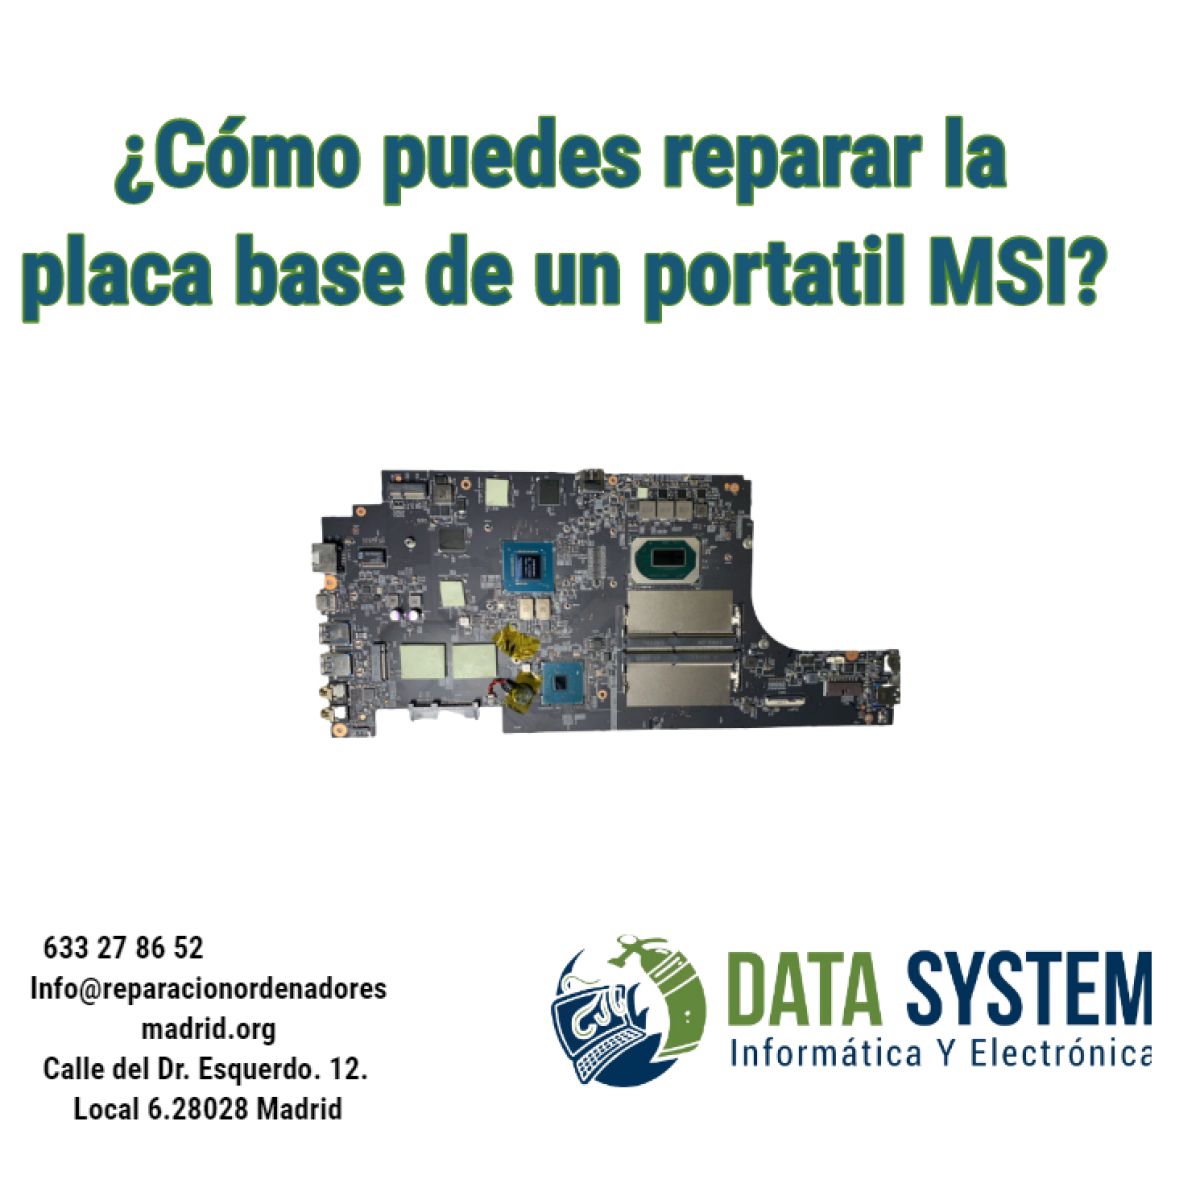 ¿Cómo puedes reparar la placa base de un portatil MSI?